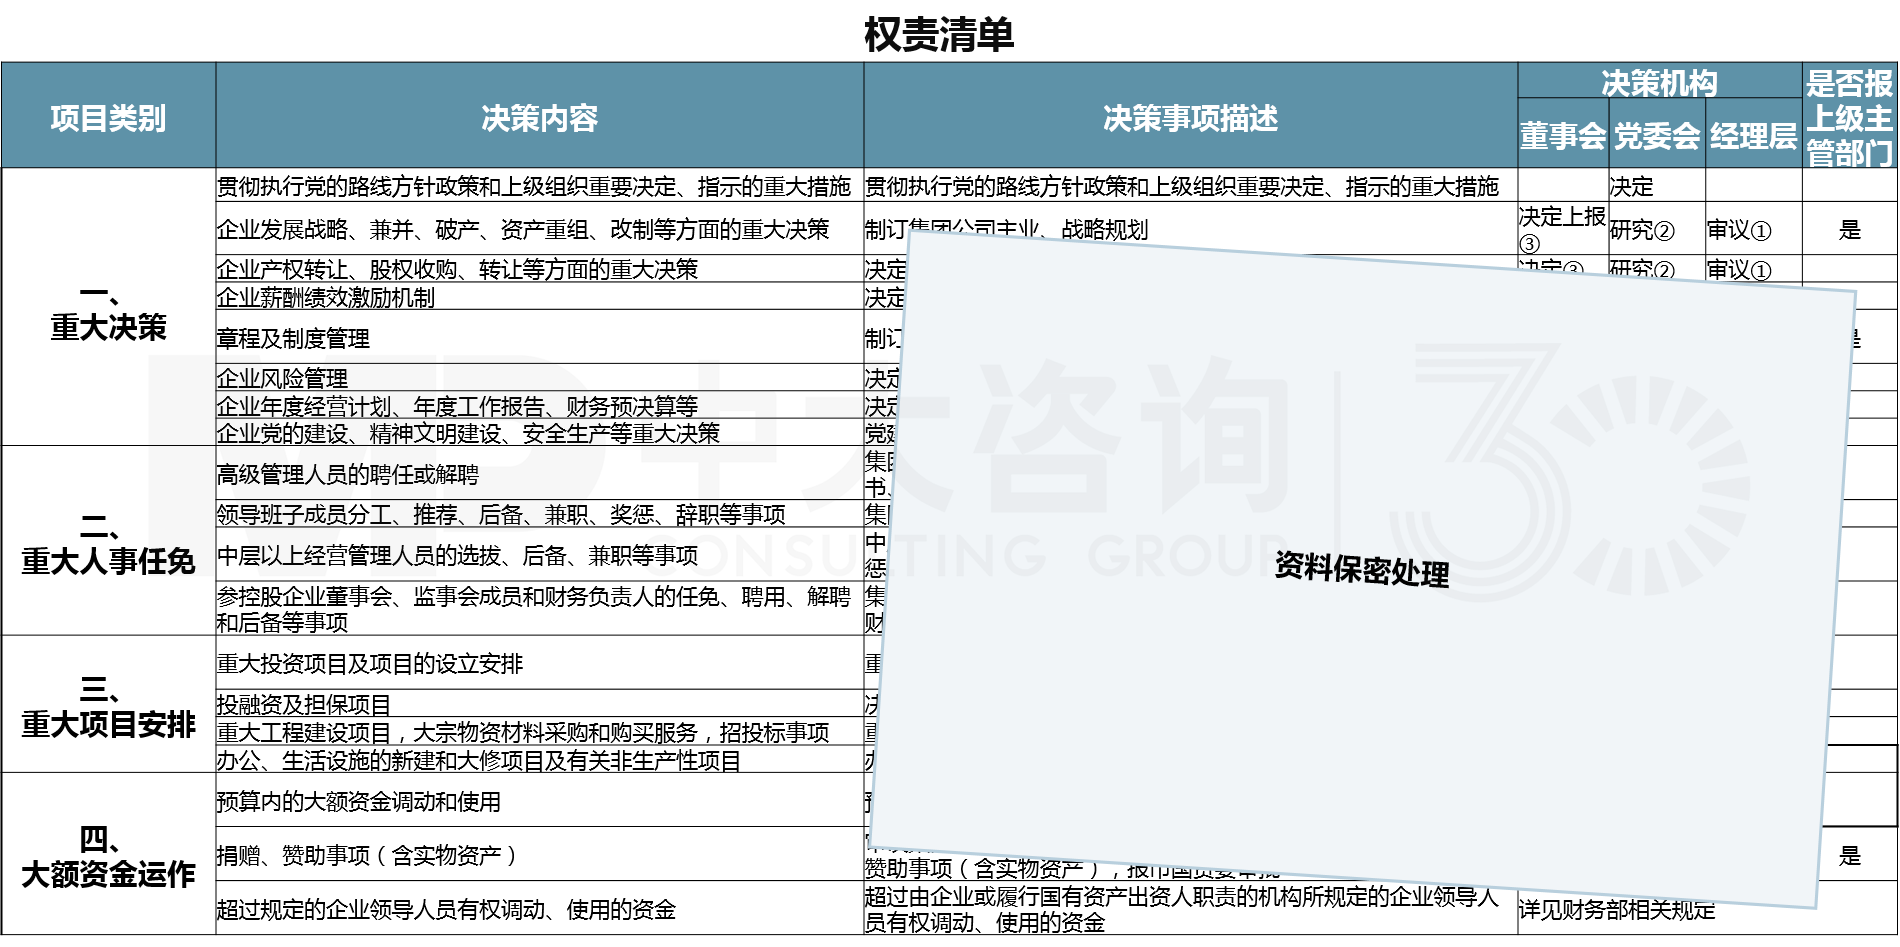 广州市某国企权责清单-中大咨询科改示范行动